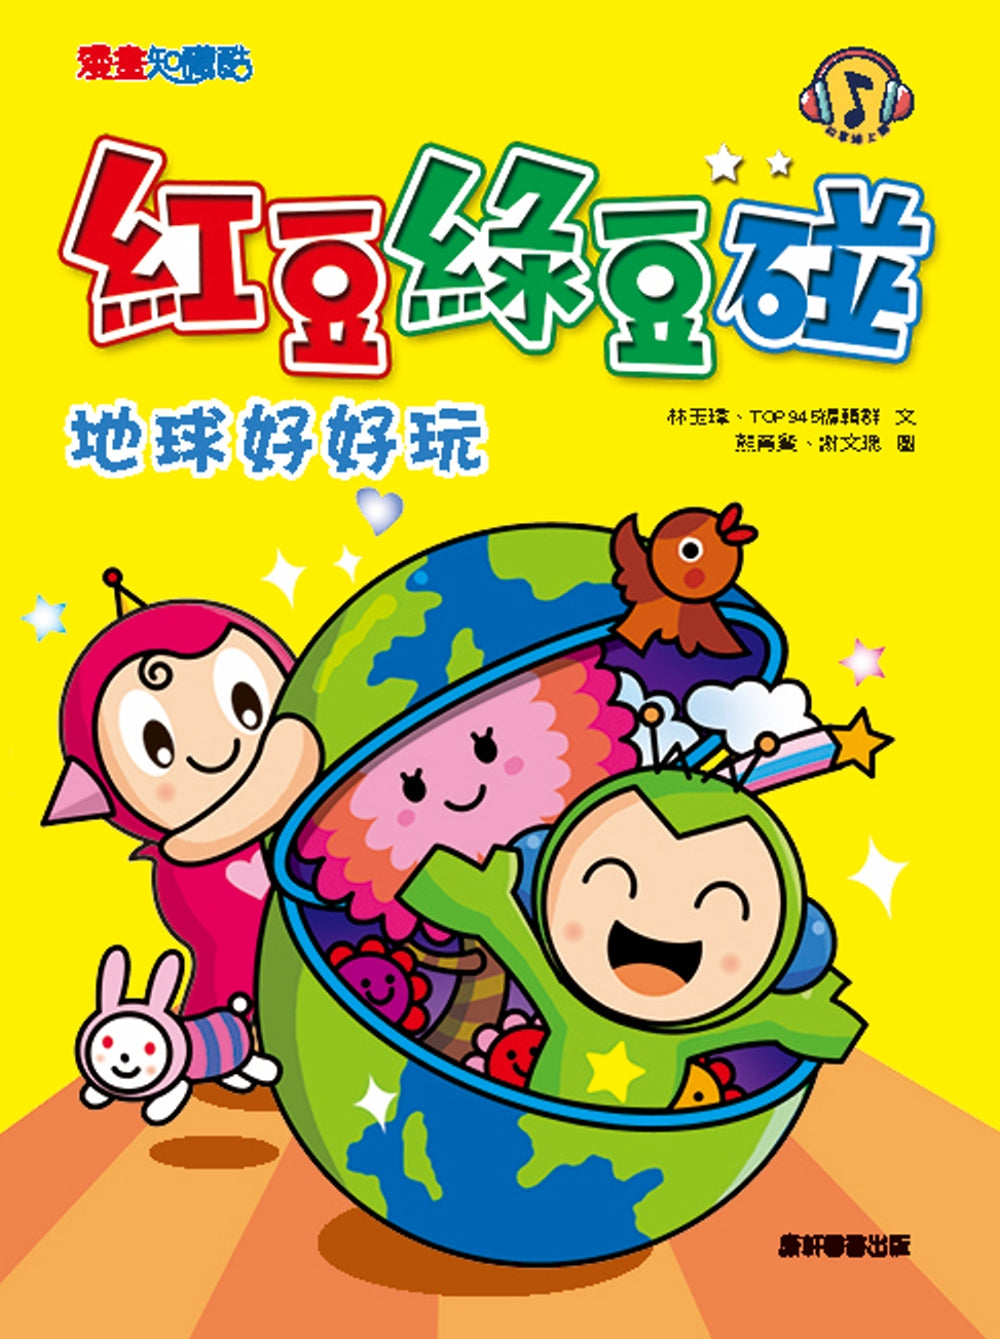 Red Bean Green Bean Manga #4: Earth is Fun! • 紅豆綠豆碰 #4：地球好好玩